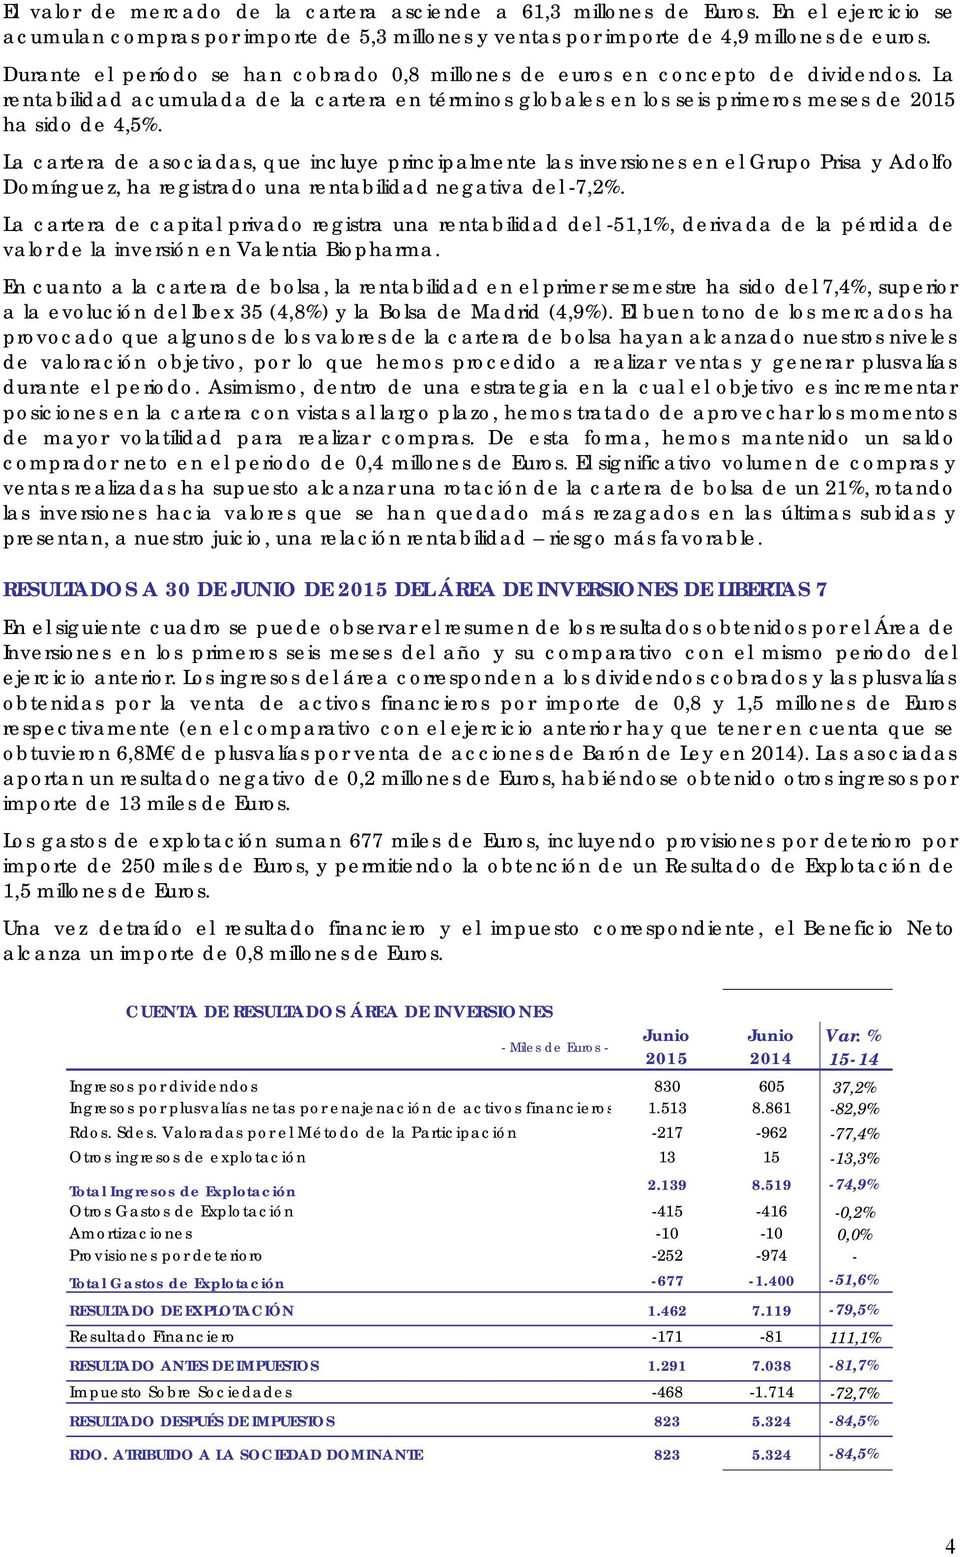 La cartera de asociadas, que incluye principalmente las inversiones en el Grupo Prisa y Adolfo Domínguez, ha registrado una rentabilidad negativa del -7,2%.